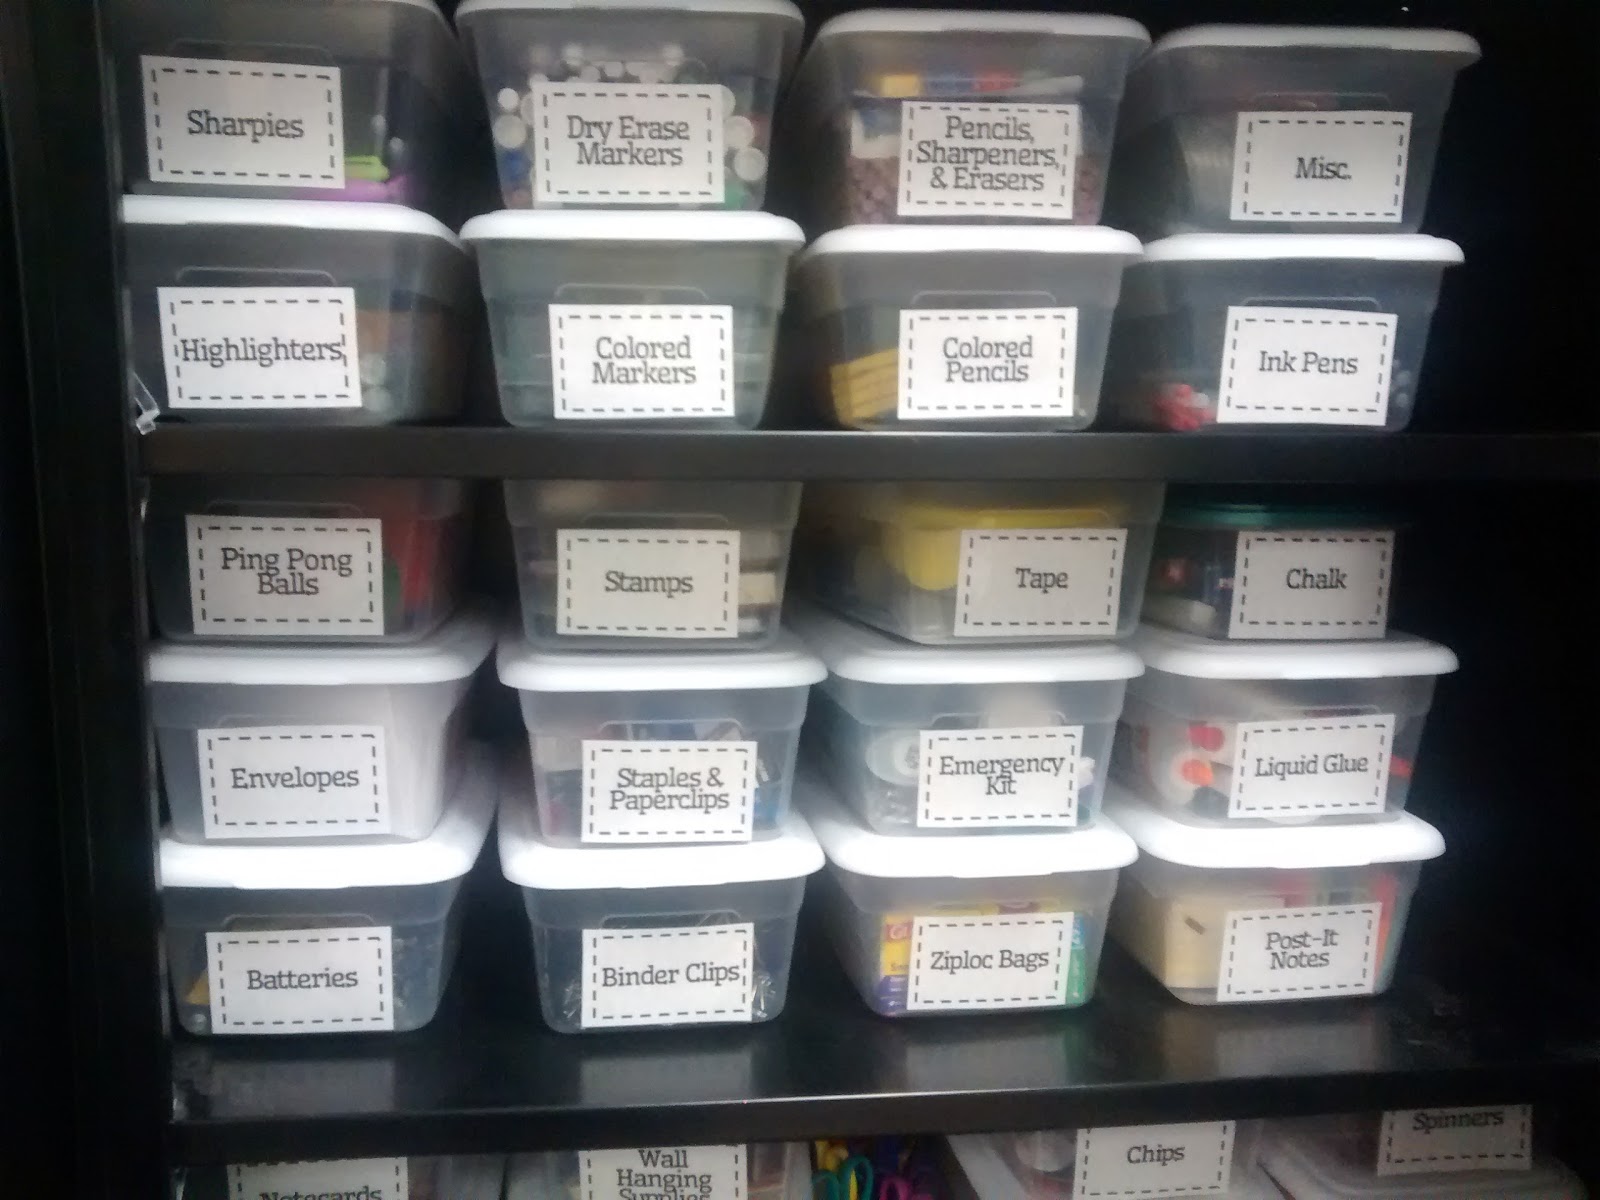 Sterilite Containers in Storage Cabinet. 